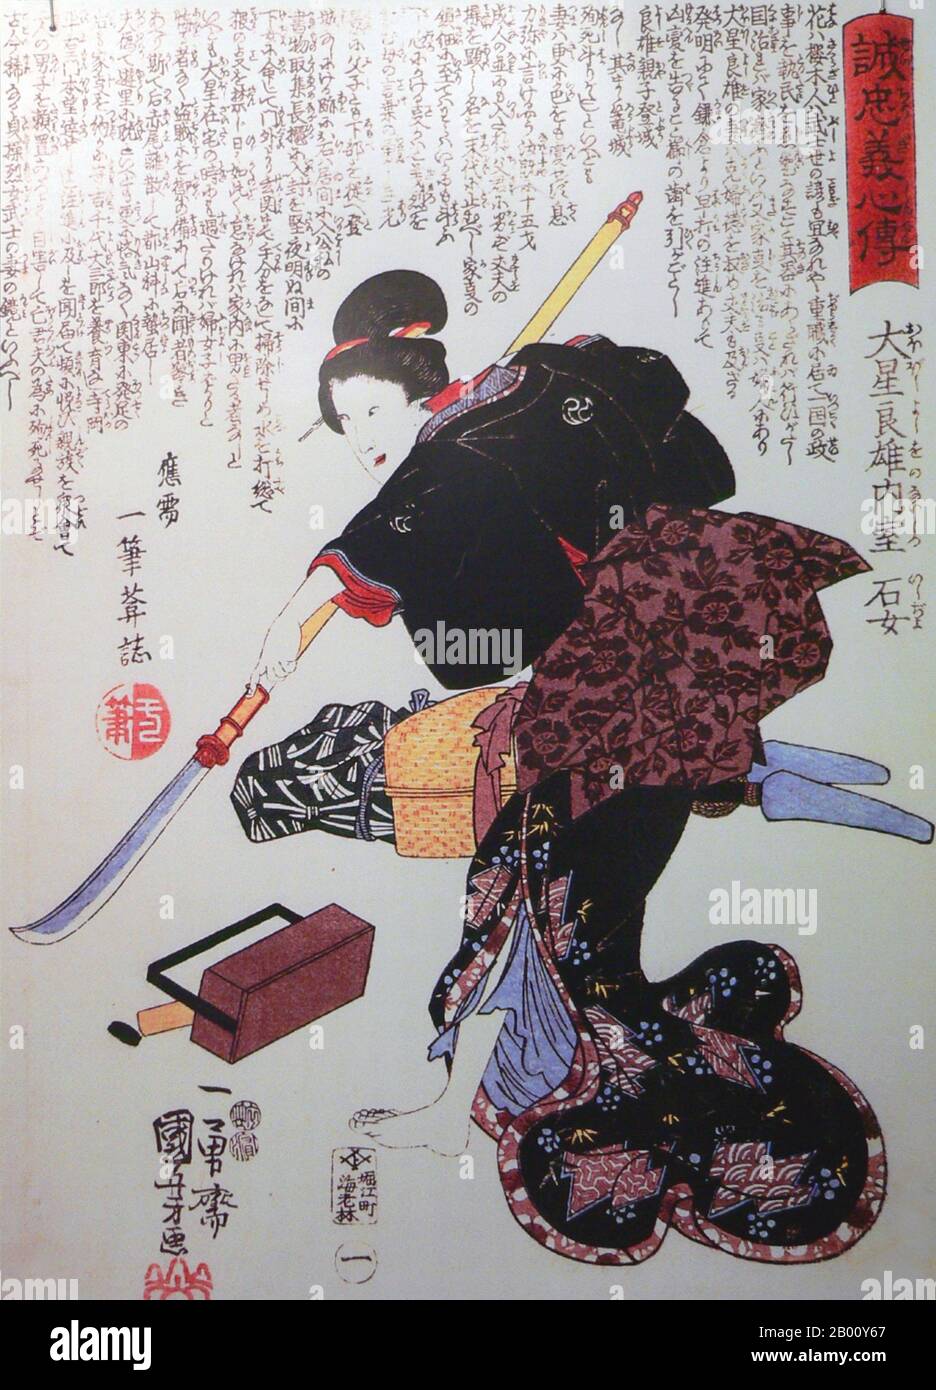 Giappone: Ishi-jo, moglie di Oboshi Yoshio, uno dei '47 Ronin'. Stampa di blocchi di legno Ukiyo-e di Utagawa Kuniyoshi (c.. 1797-1861), 1848. Onna-Bugeisha o samurai femminile, formò una piccola sezione della classe superiore giapponese tradizionale. Molte mogli, vedove, figlie e ribelli hanno risposto alla chiamata del dovere impegnandosi in battaglia, comunemente insieme agli uomini samurai. Erano membri della classe bushi (samurai) nel Giappone feudale e sono stati addestrati nell'uso di armi per proteggere la loro famiglia, famiglia e onore in tempi di guerra. Essi rappresentavano anche una divergenza dal tradizionale ruolo di casalinga giapponese. Foto Stock